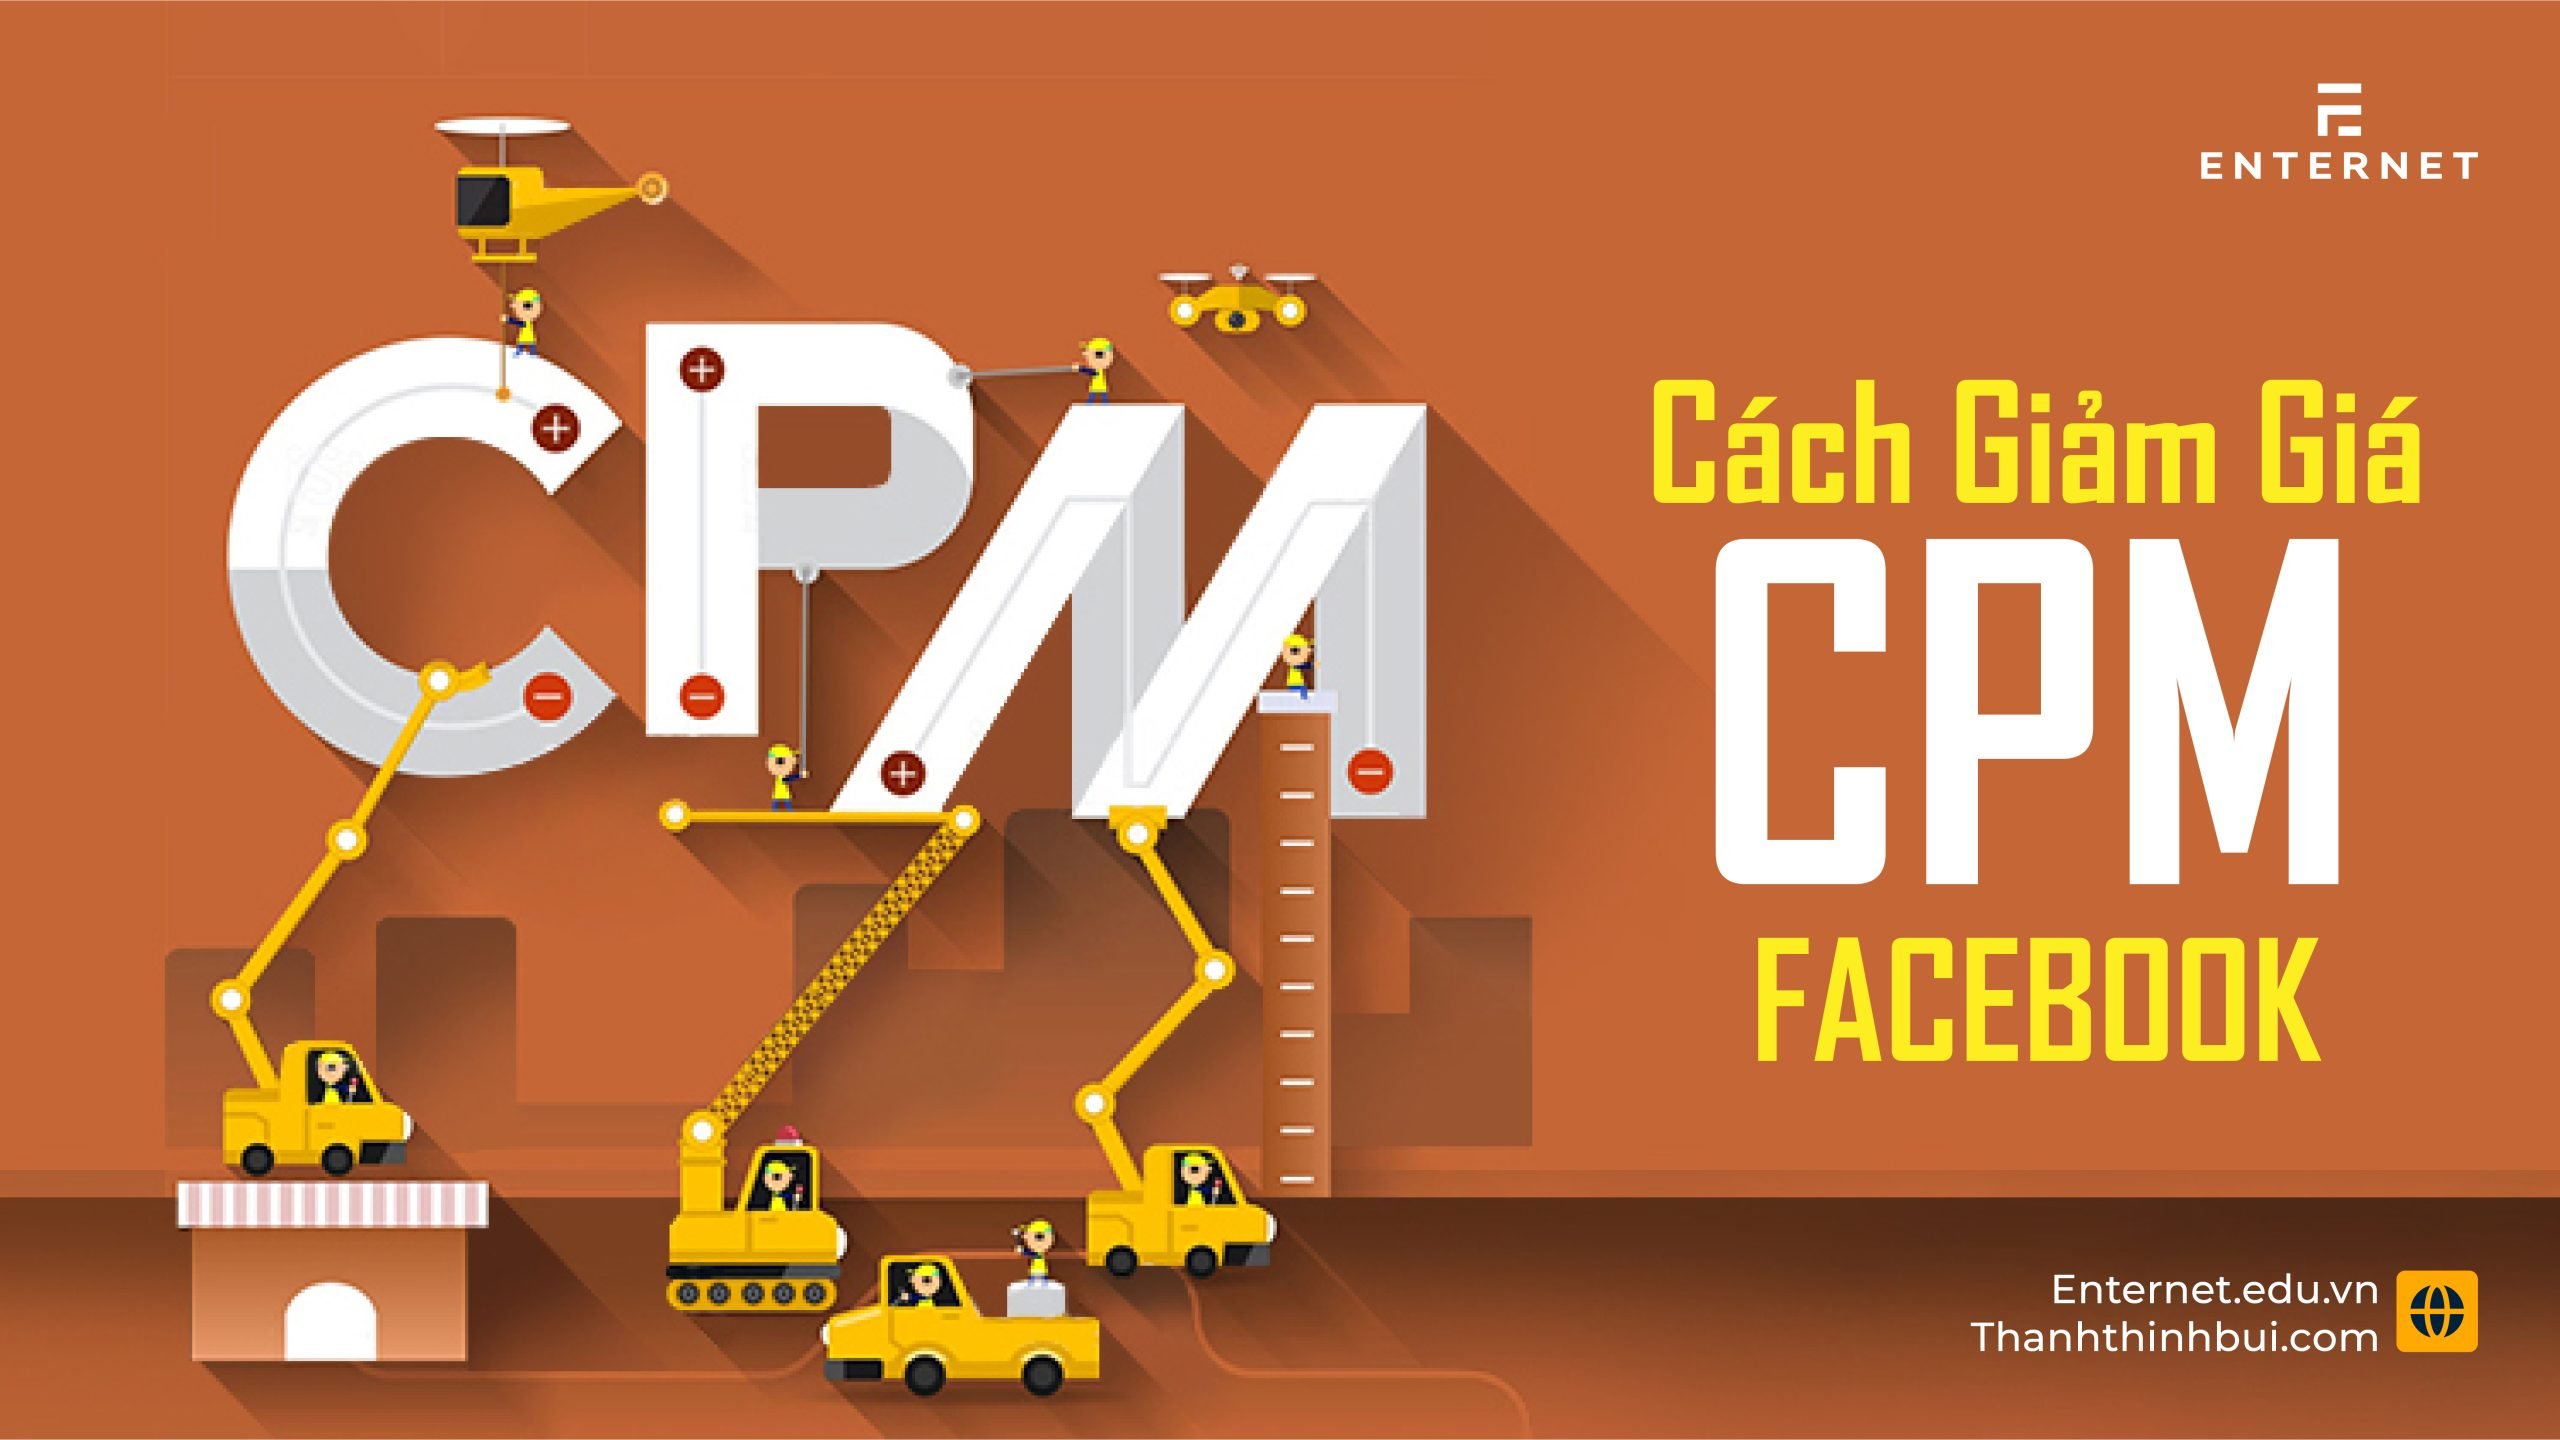 CPM là gì? Cách giảm giá CPM quảng cáo Facebook